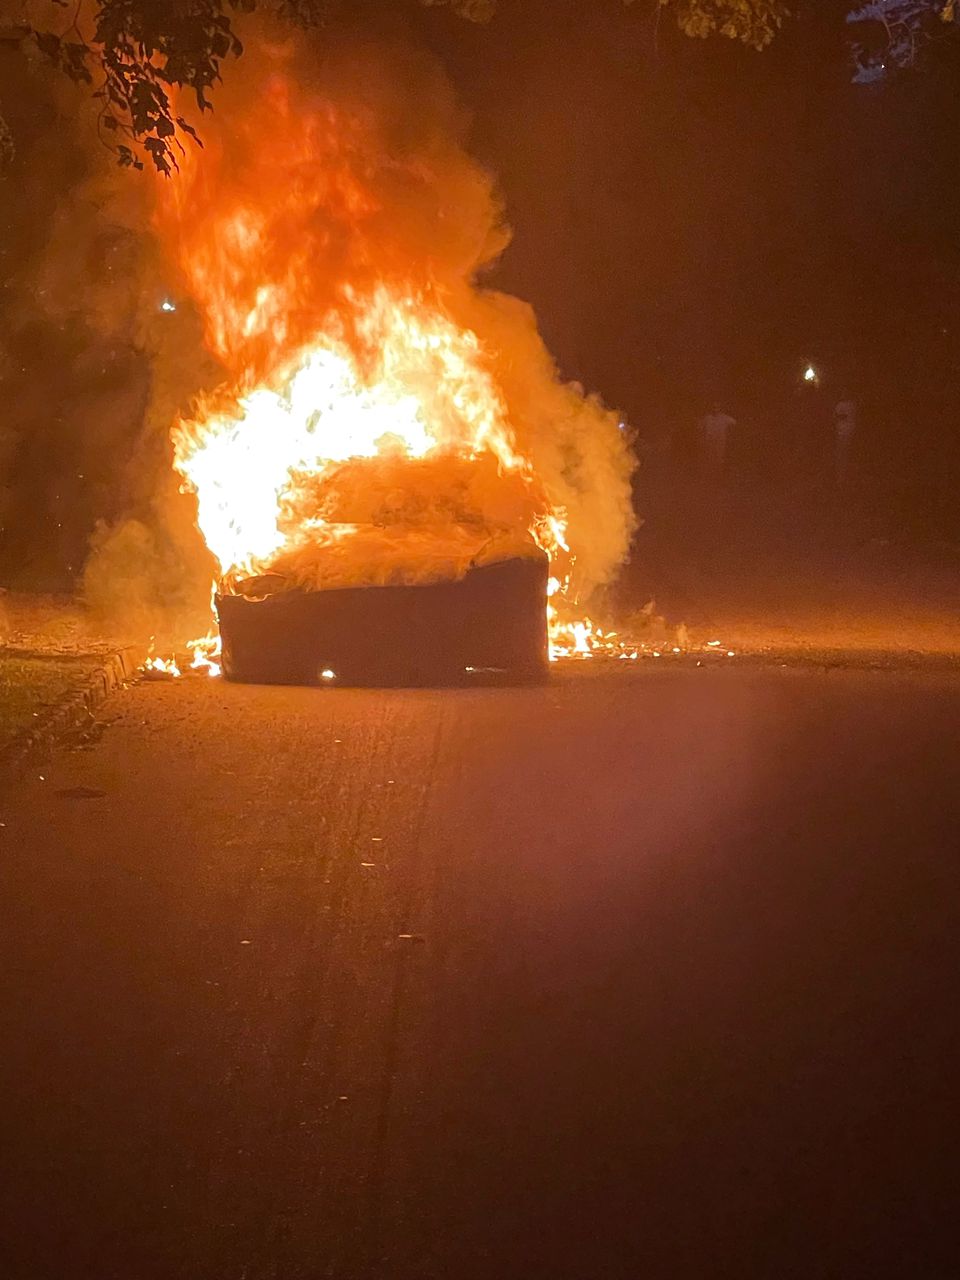 Нова Tesla Model S Plaid раптово загорілась під час руху. Фото